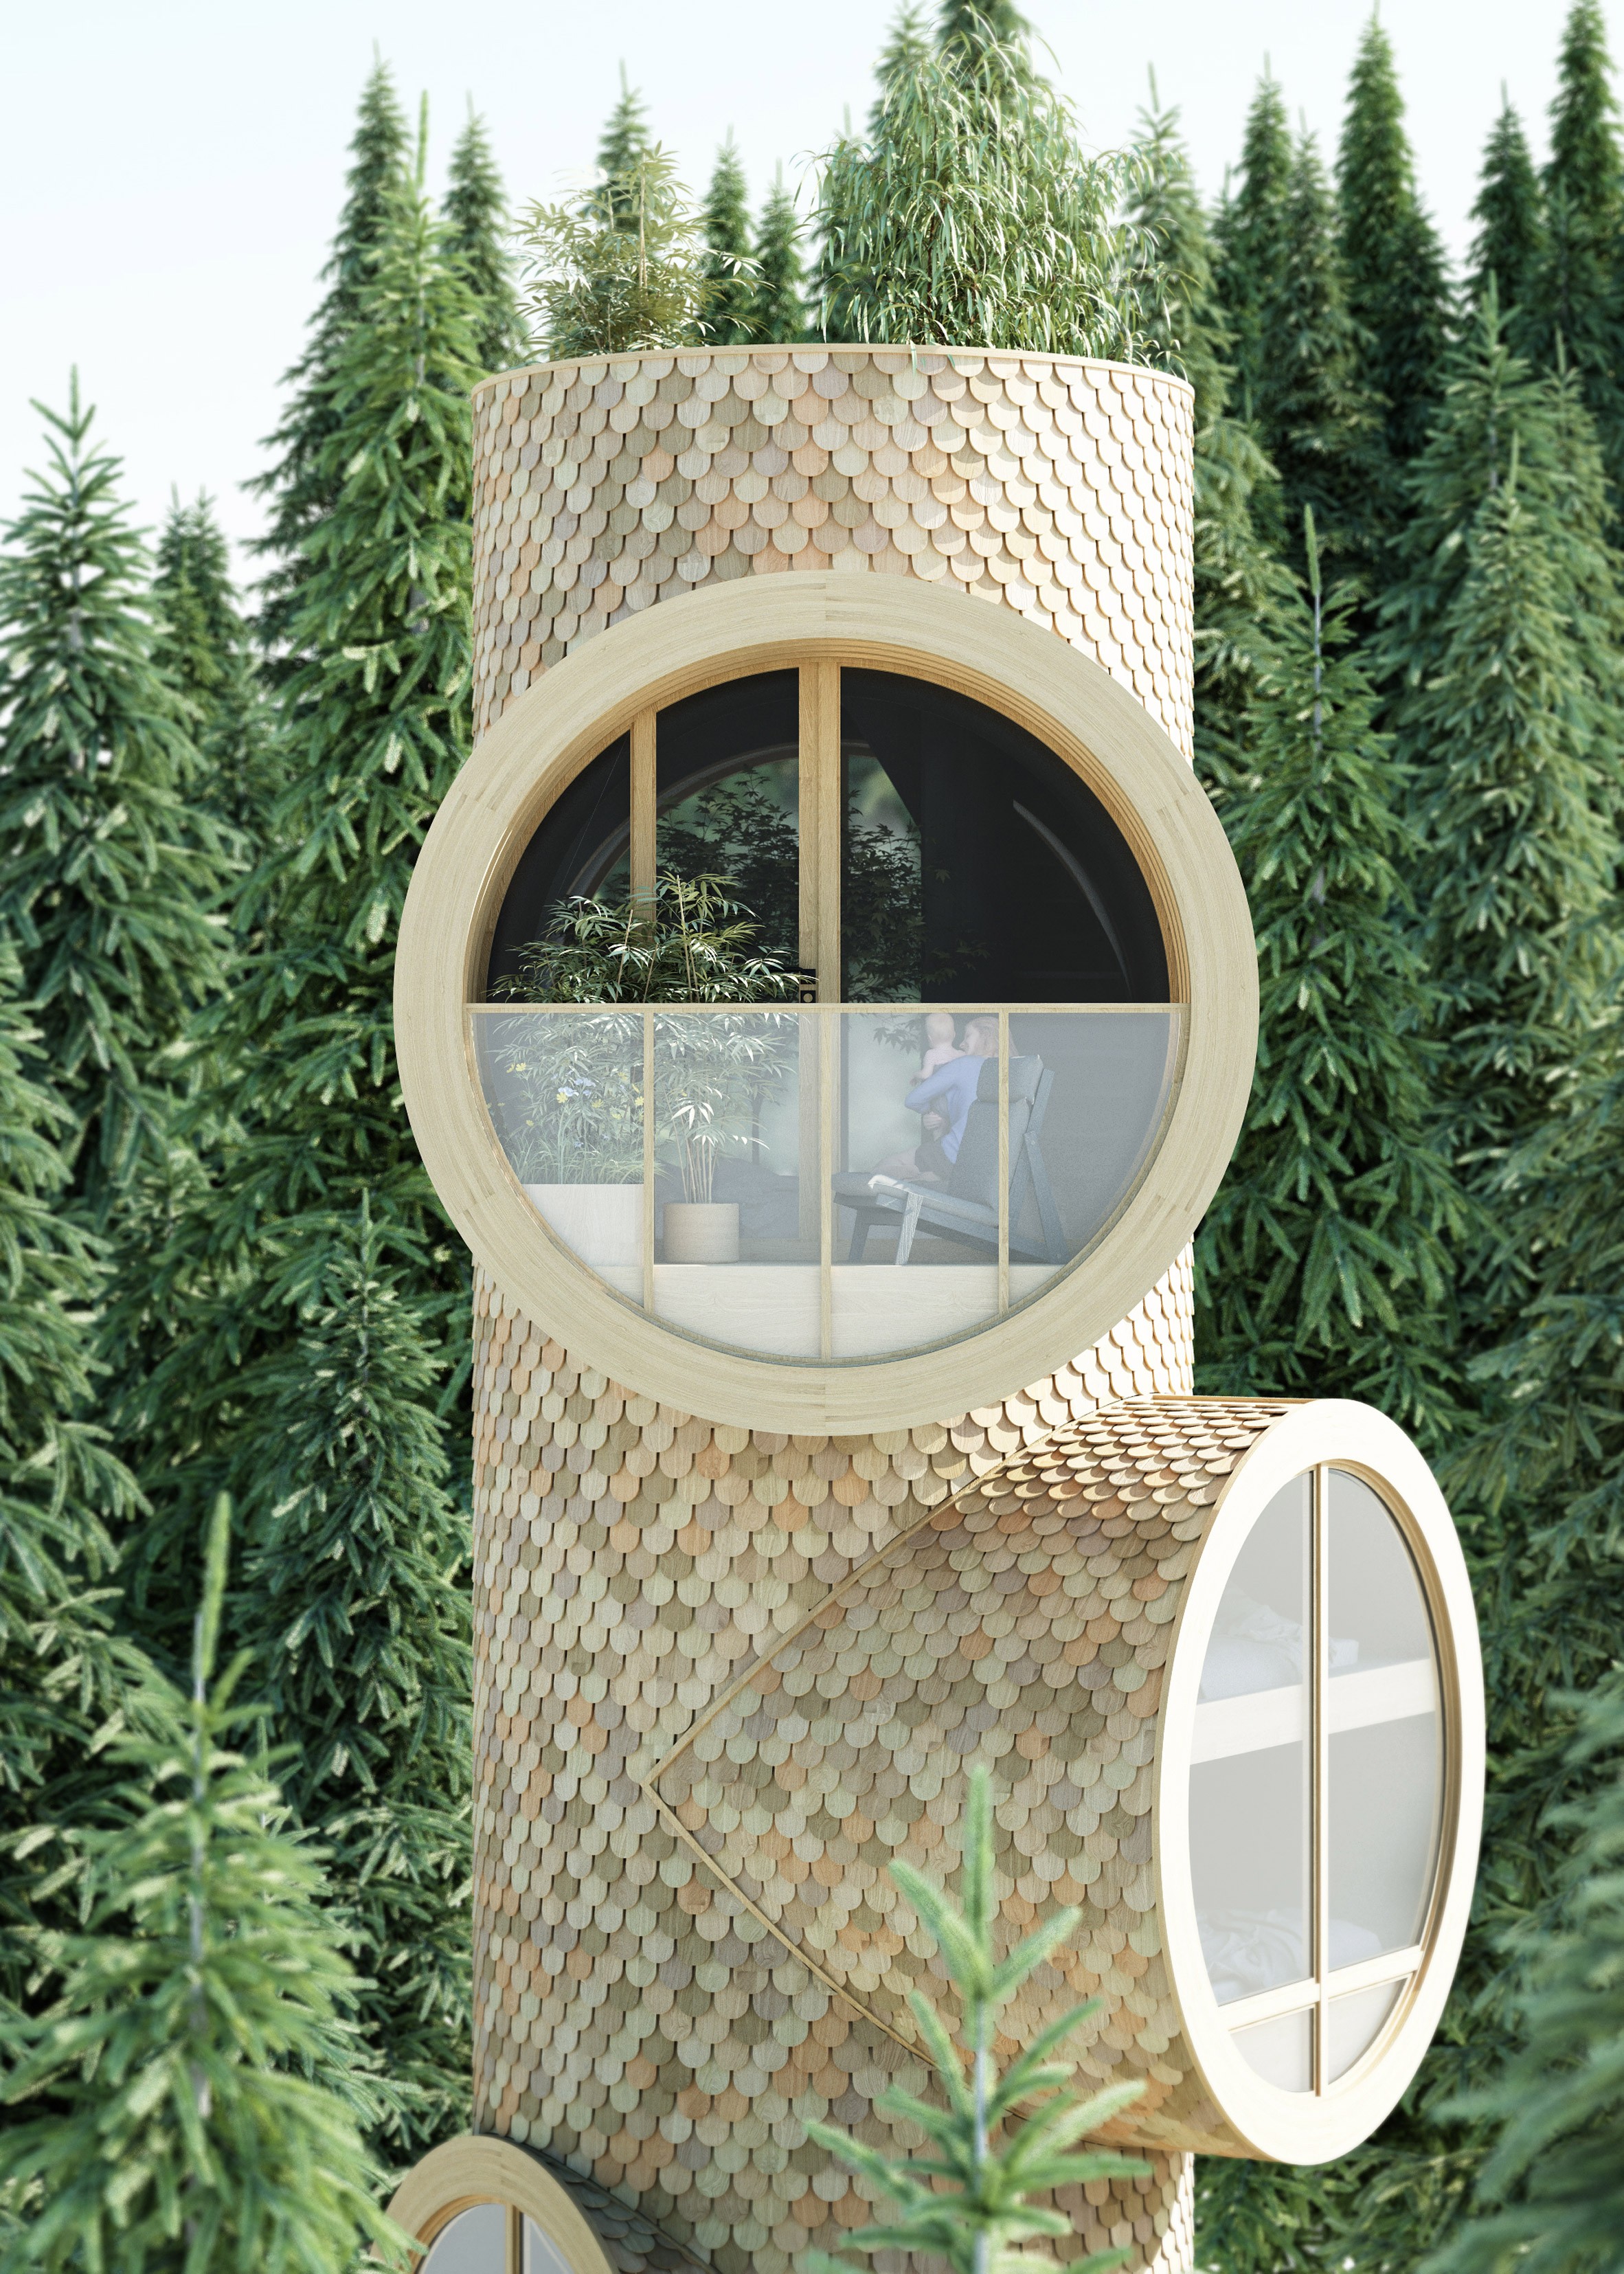 Estúdio cria casa na árvore modular que pode ser empilhada (Foto: Reprodução)